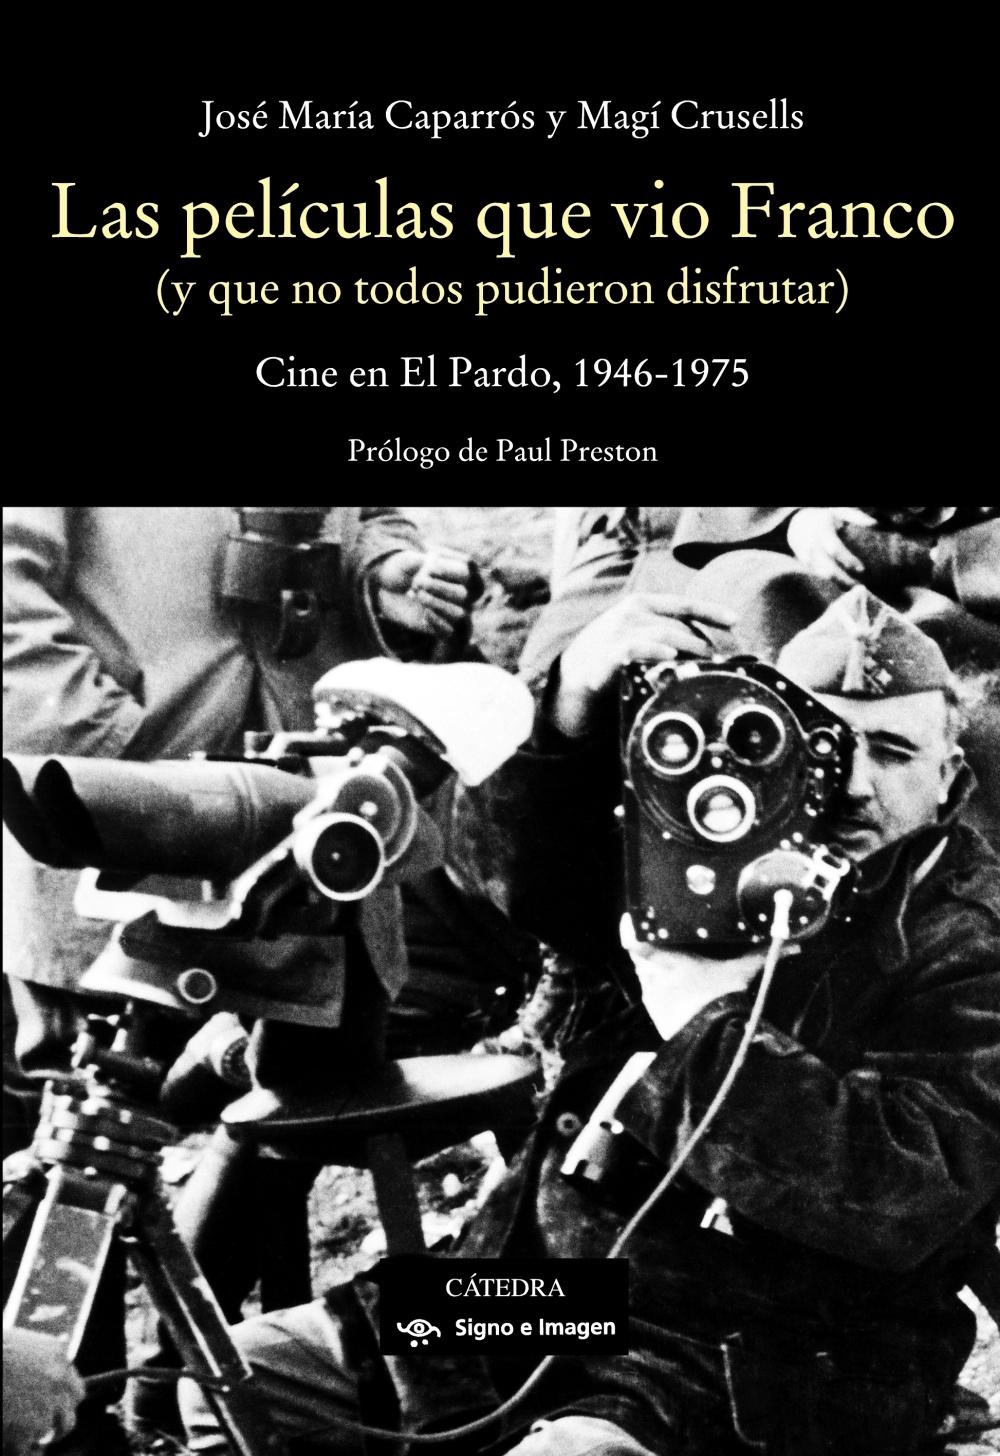 PELÍCULAS QUE VIO FRANCO, LAS "CINE EN EL PARDO, 1946-1975"